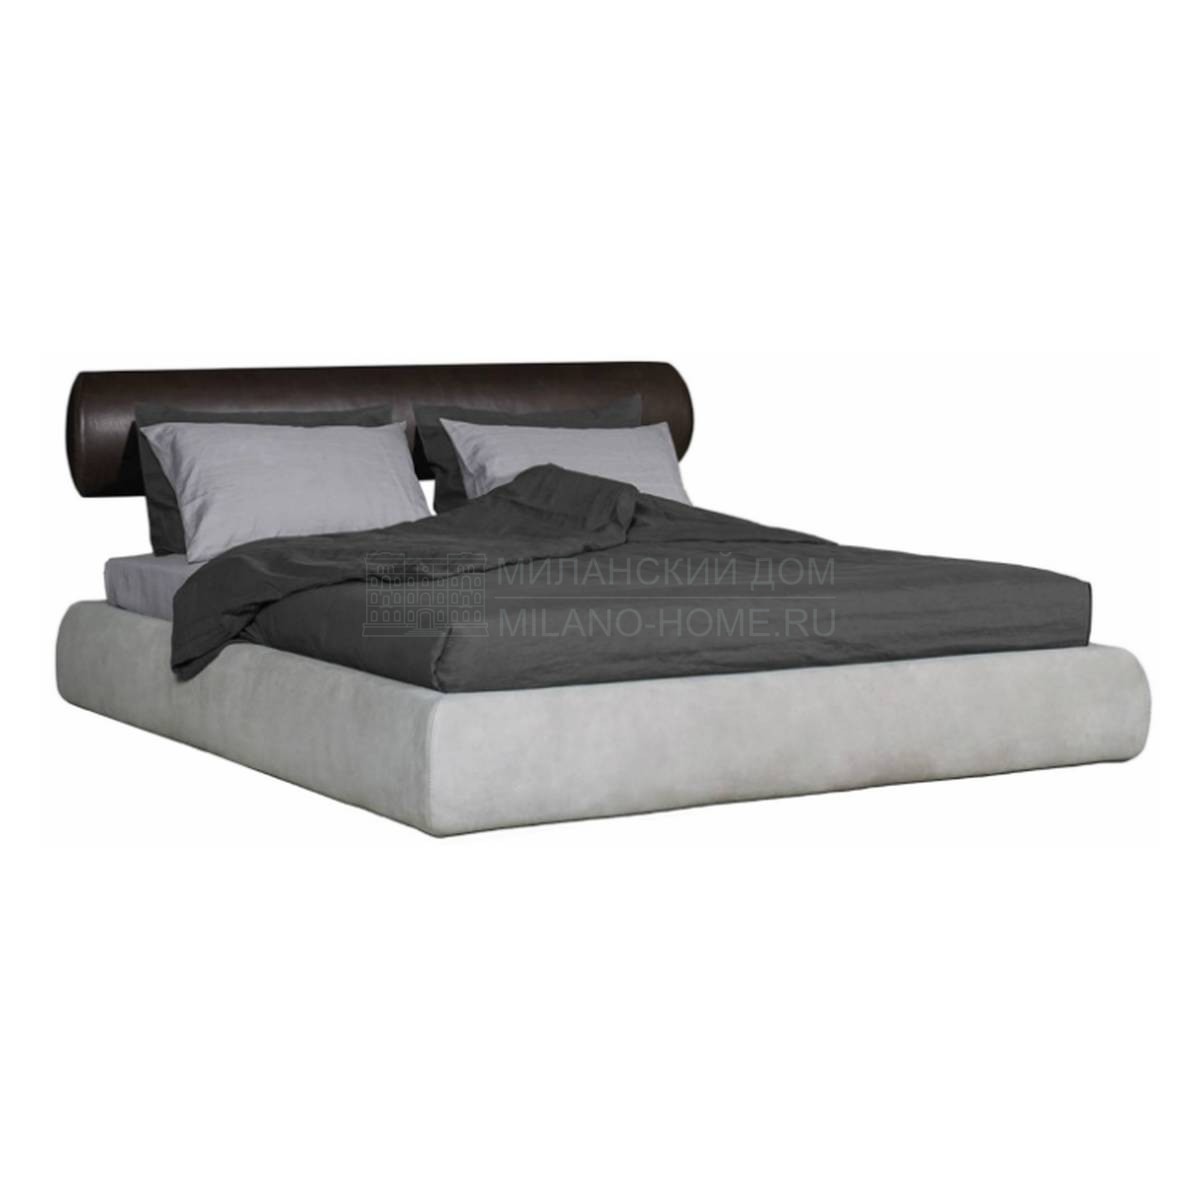 Кровать с мягким изголовьем Como bed из Италии фабрики BAXTER